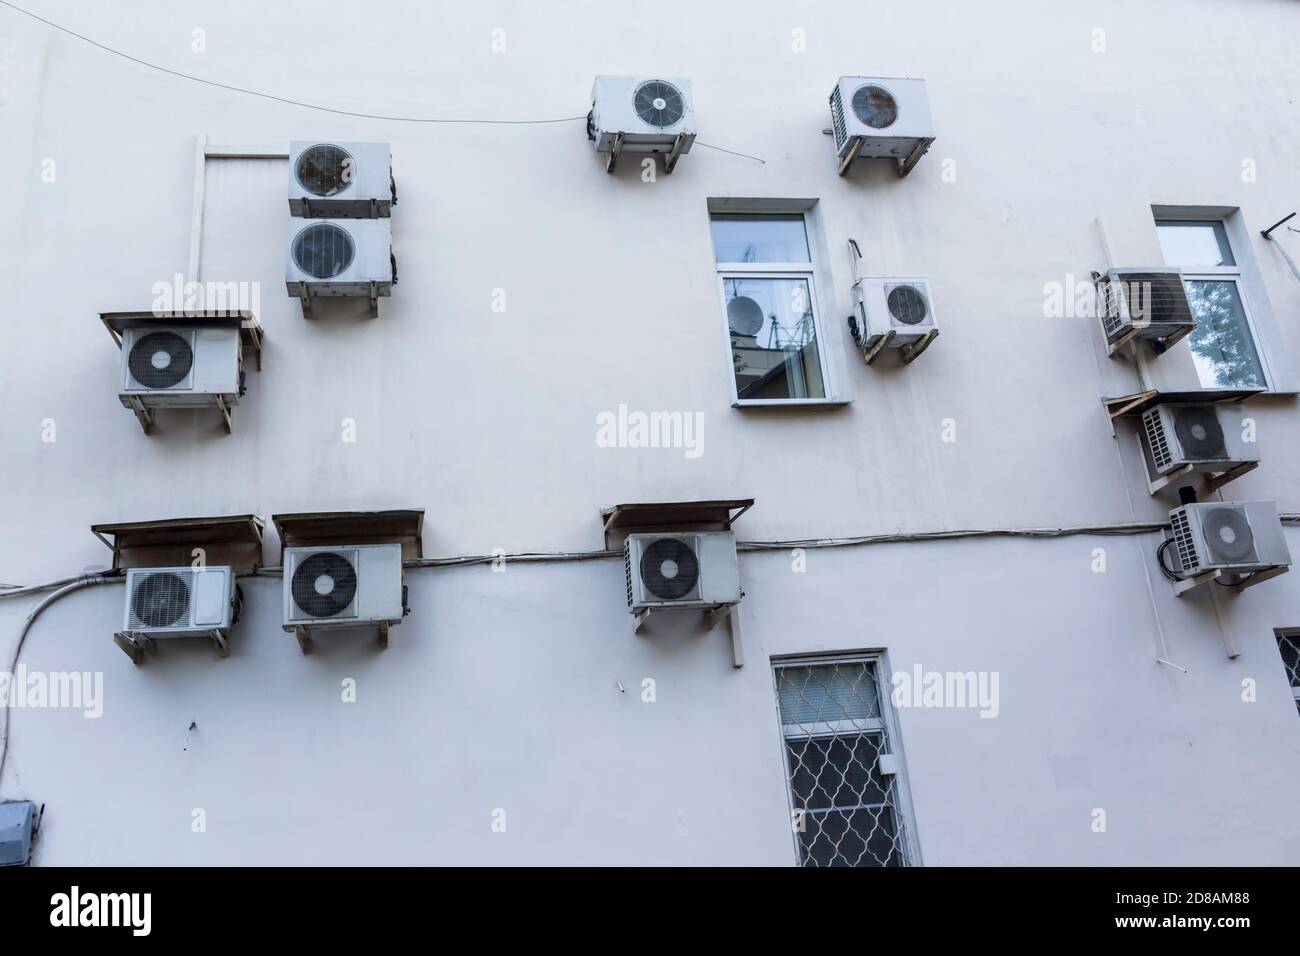 Climatiseurs sur le mur de la maison où sont situés les bureaux. Plâtre blanc et boîtiers des unités externes du système de ventilation. Banque D'Images